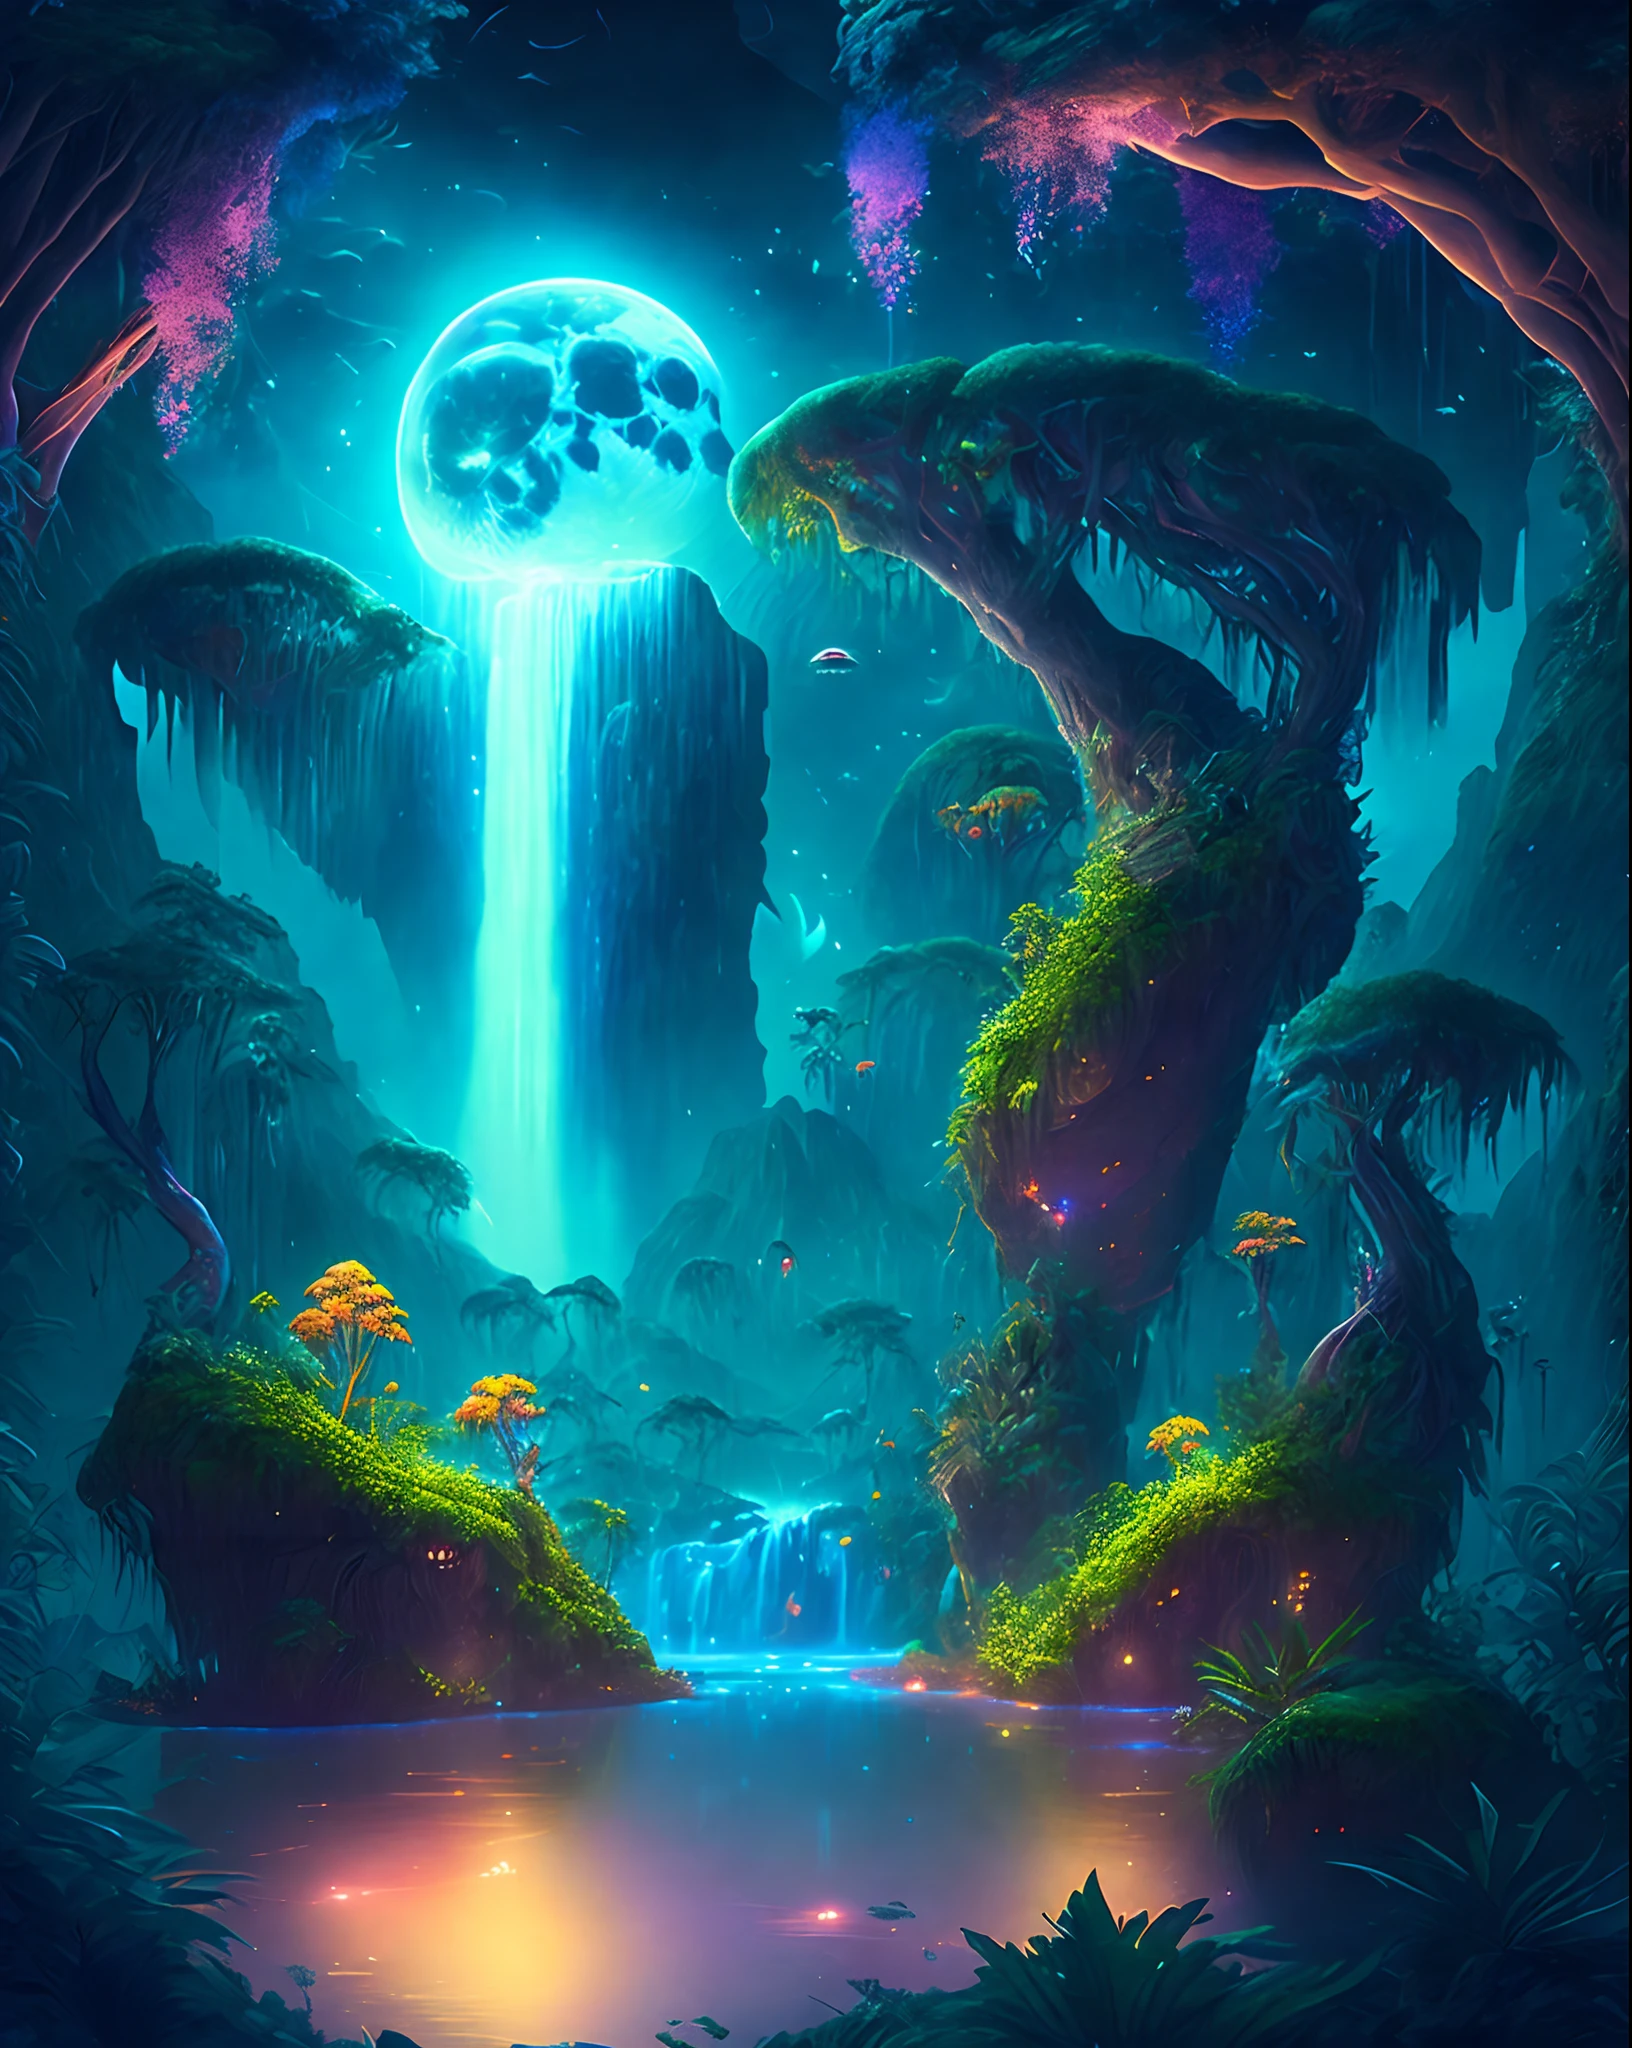 Uma encantadora selva de fantasia sob um céu enluarado, enormes ilhas flutuantes cobertas por vegetação exuberante, cachoeiras em cascata, e criaturas iluminadas voando pela noite, arte digital